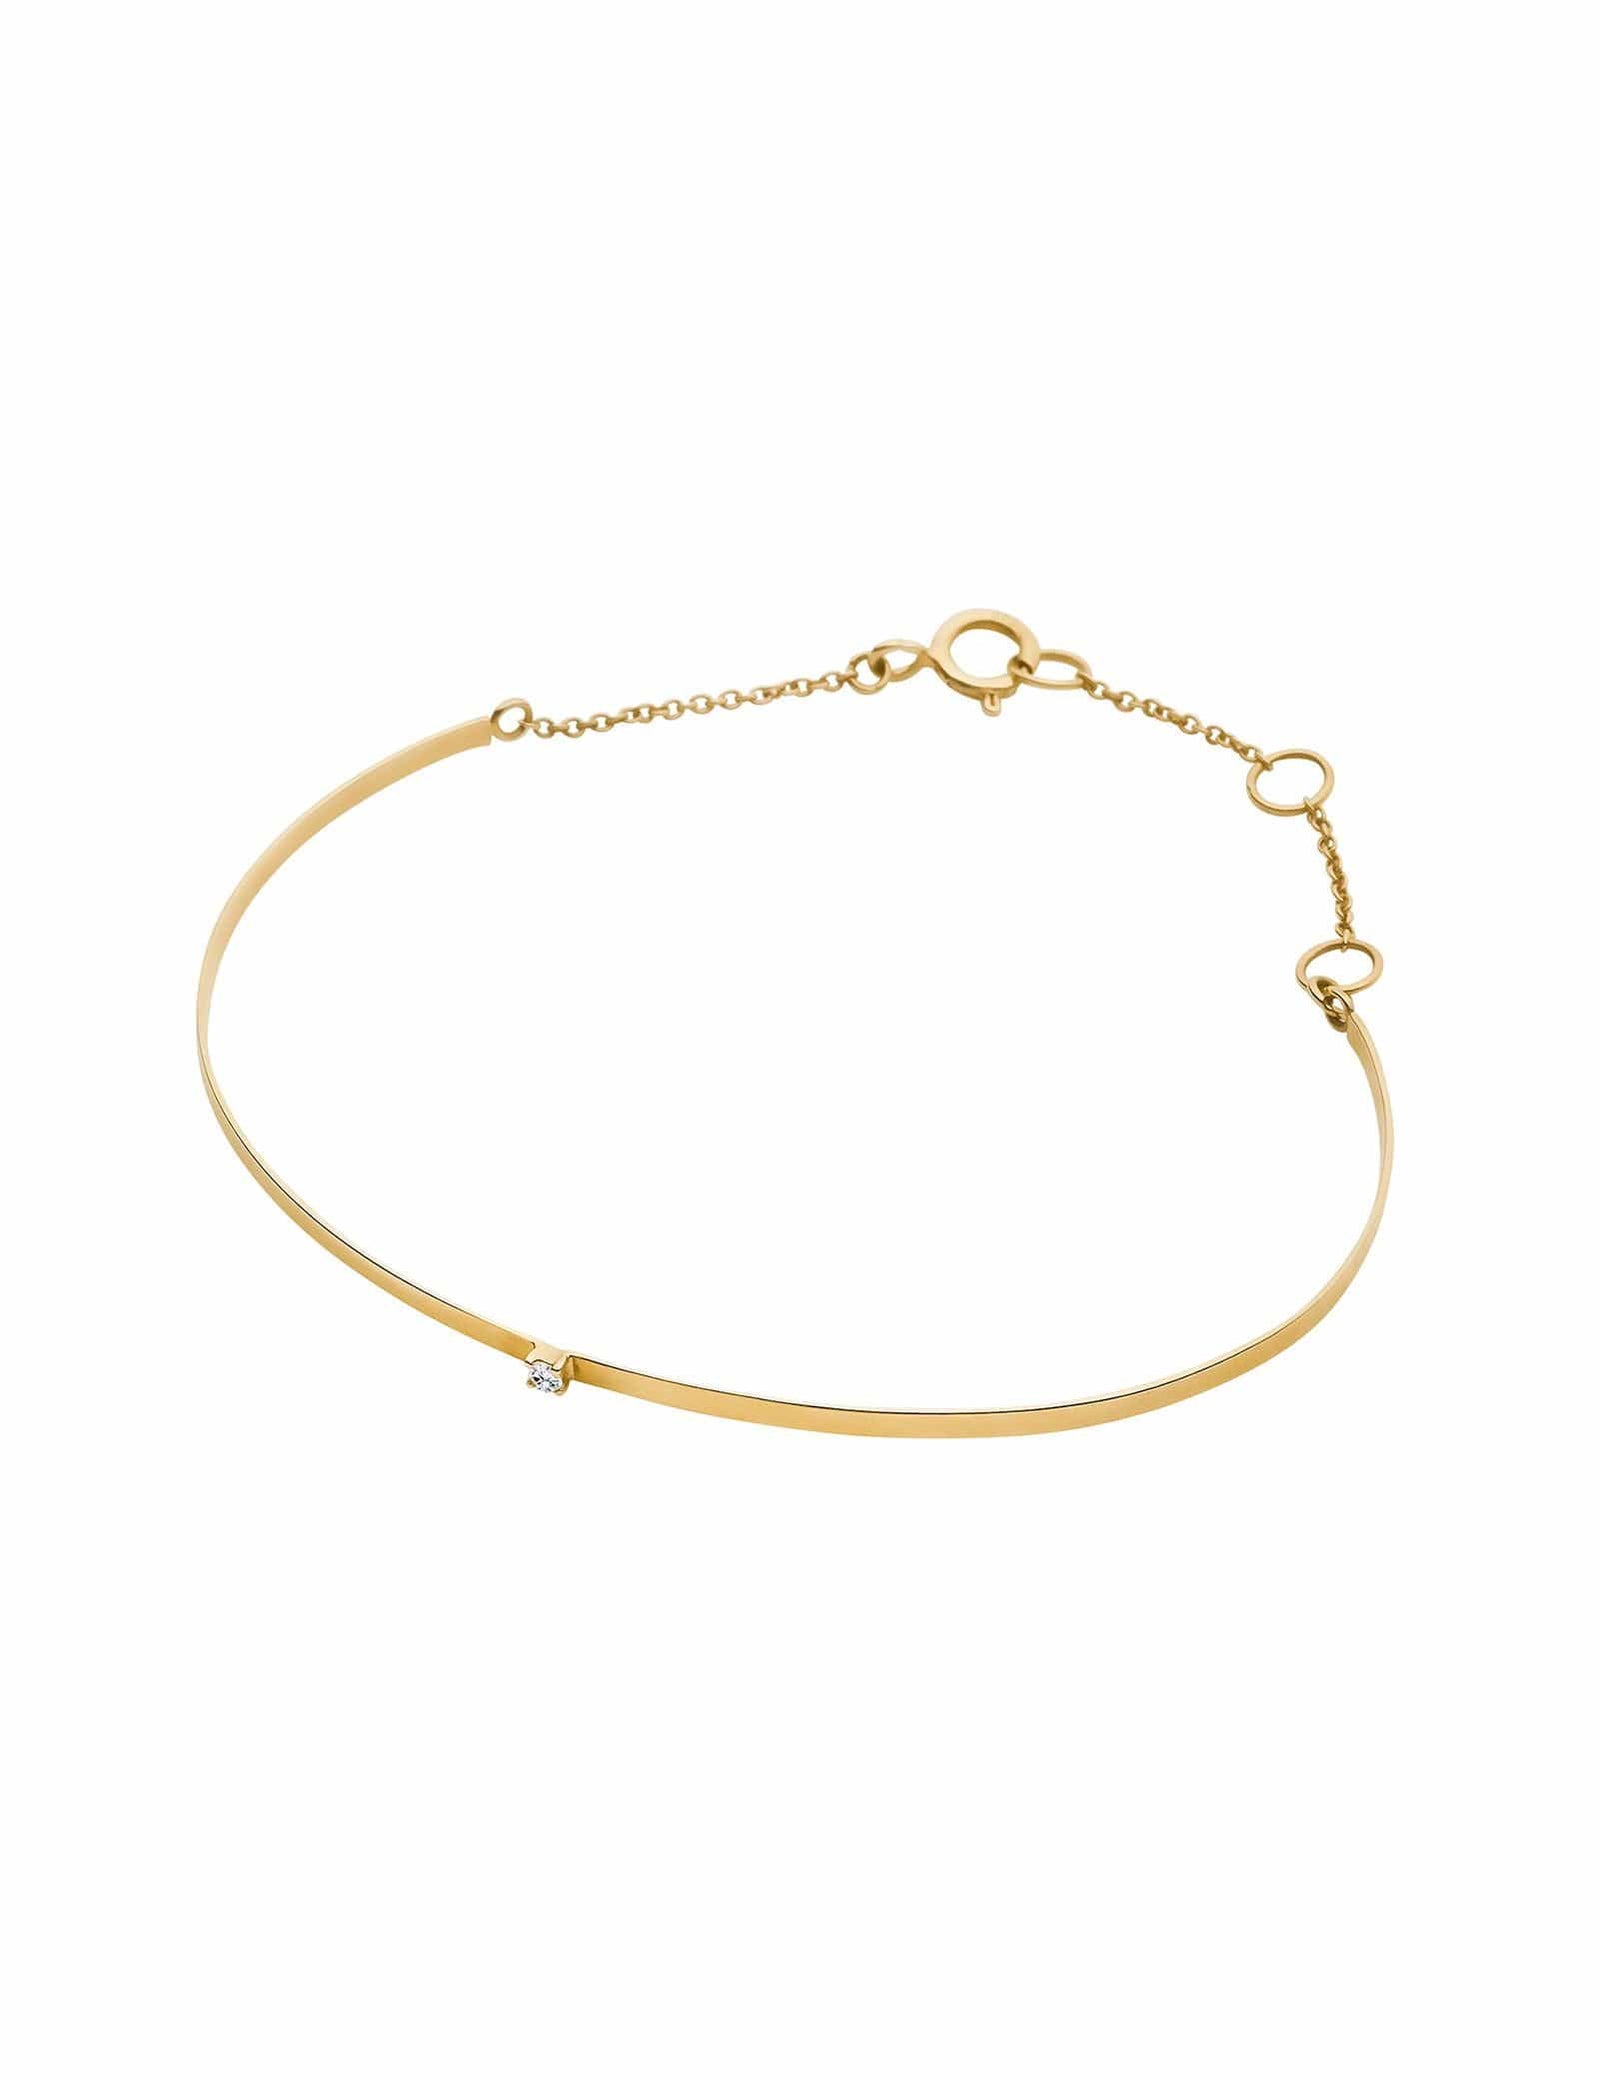 Solid Gold Bracelets - Luna Rae